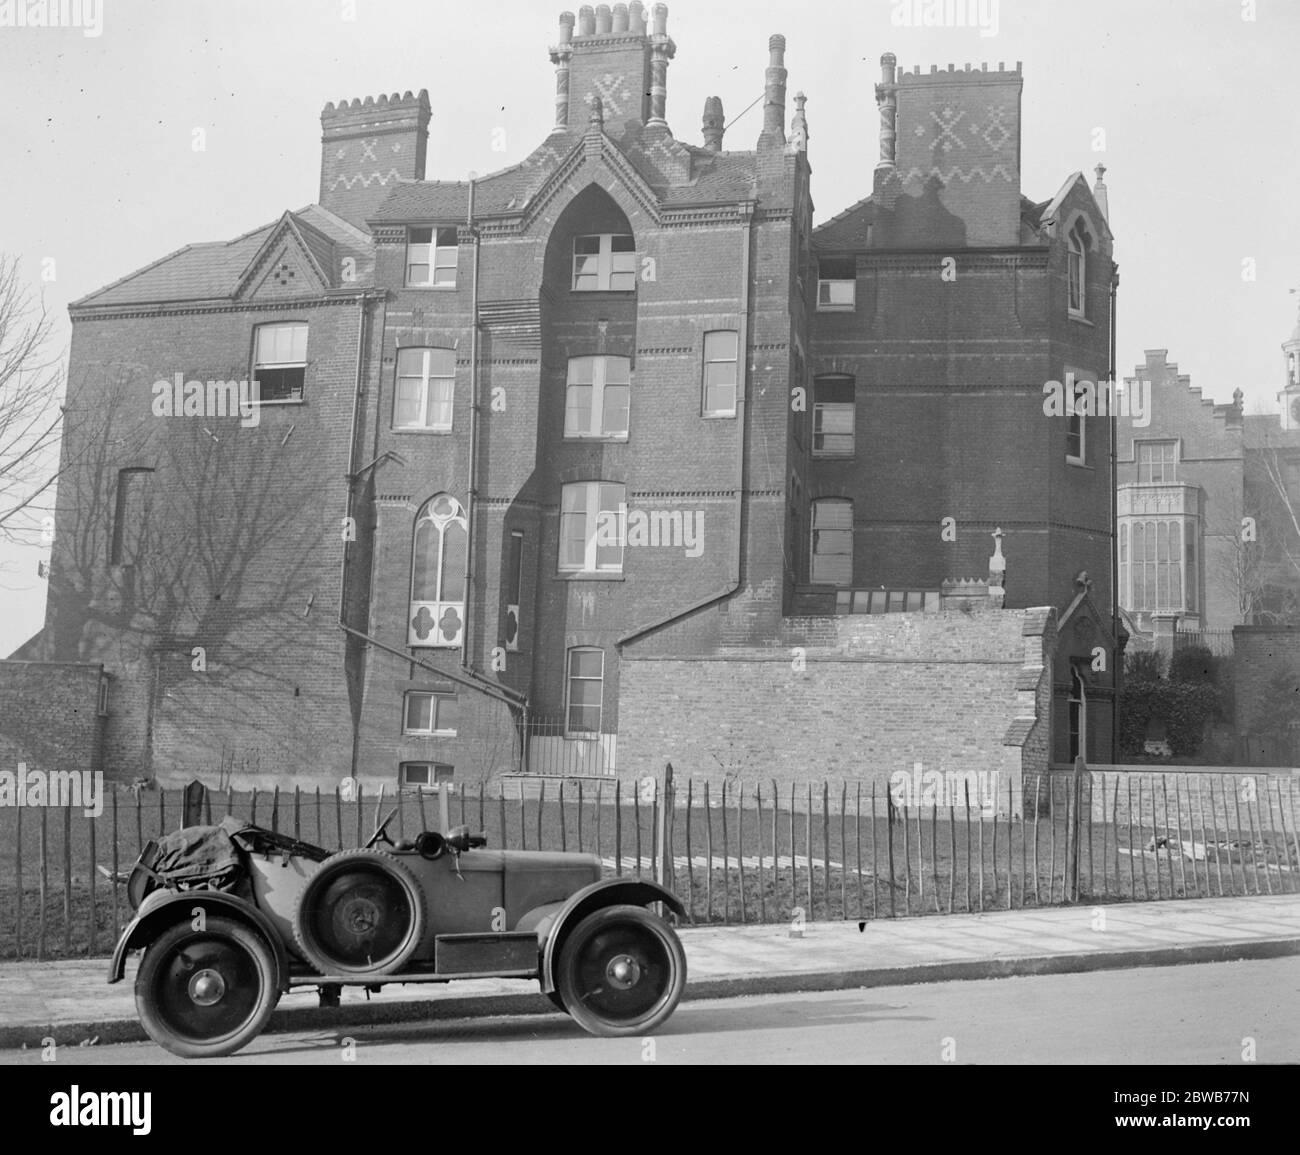 Berühmte Harrow Schule Haus sichtbar nach 130 Jahren. Harrow School im Norden - West London, macht bemerkenswerte Verbesserungen in der High Street, die eröffnet hat ' Druries ' eines der Harrow ' s bekanntesten Häuser, nachdem sie seit 130 Jahren versteckt. 'Druries' ist jetzt von der Fahrbahn aus gesehen. 14 März 1924 Stockfoto